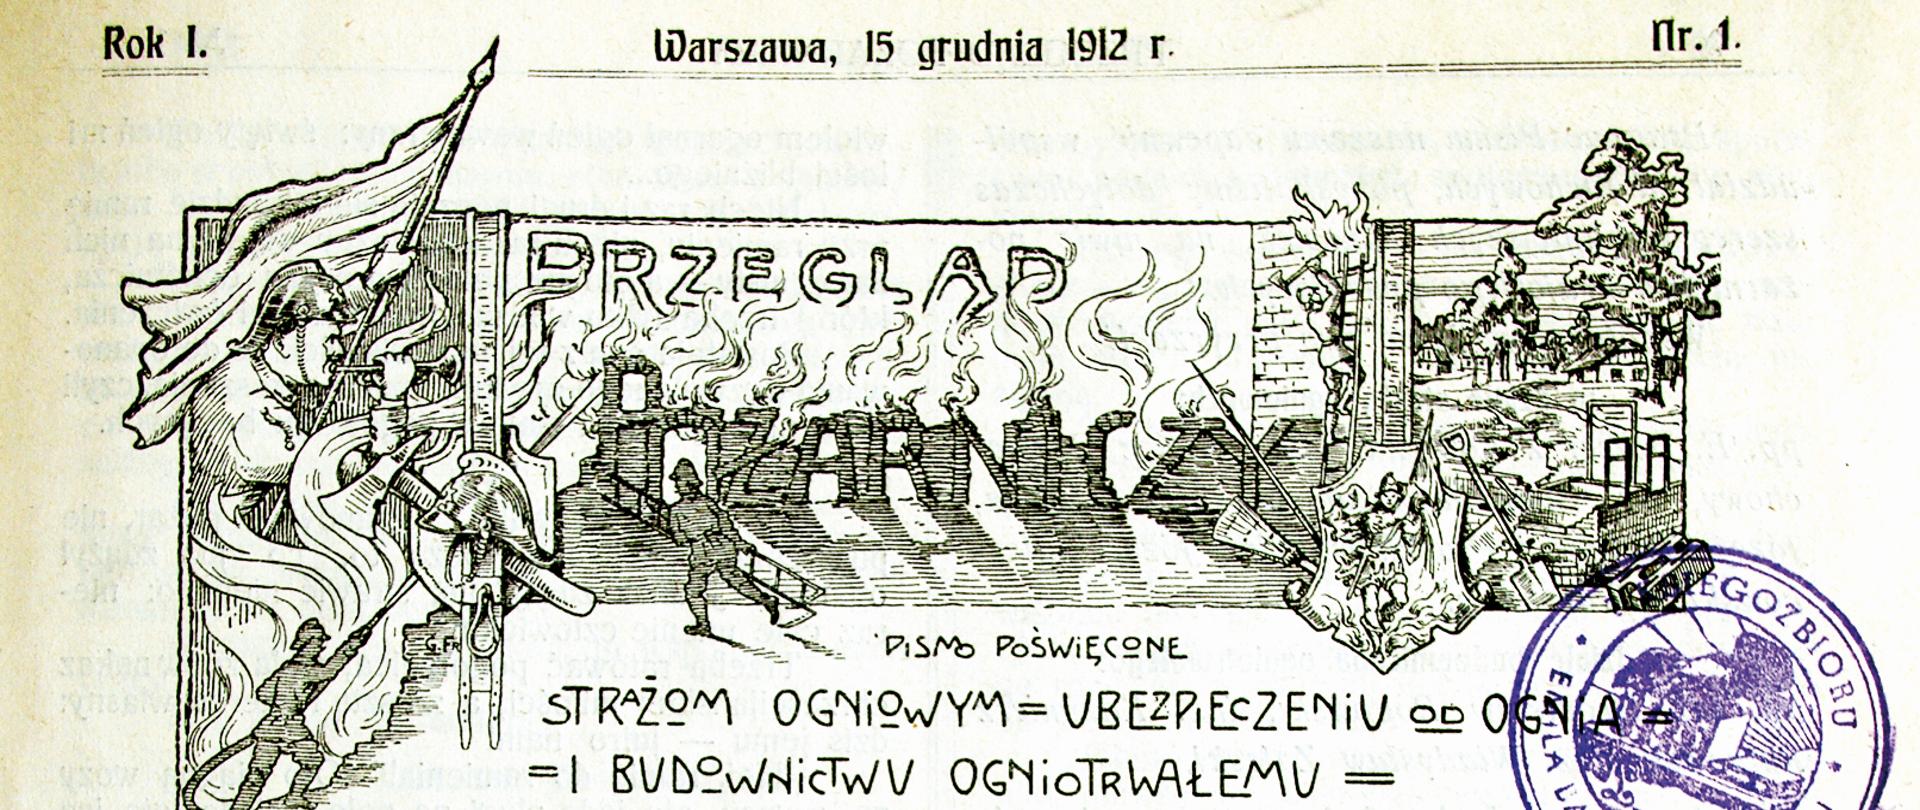 Na zdjęciu widać pierwszą okładkę Przeglądu Pożarniczego z 1912 roku.